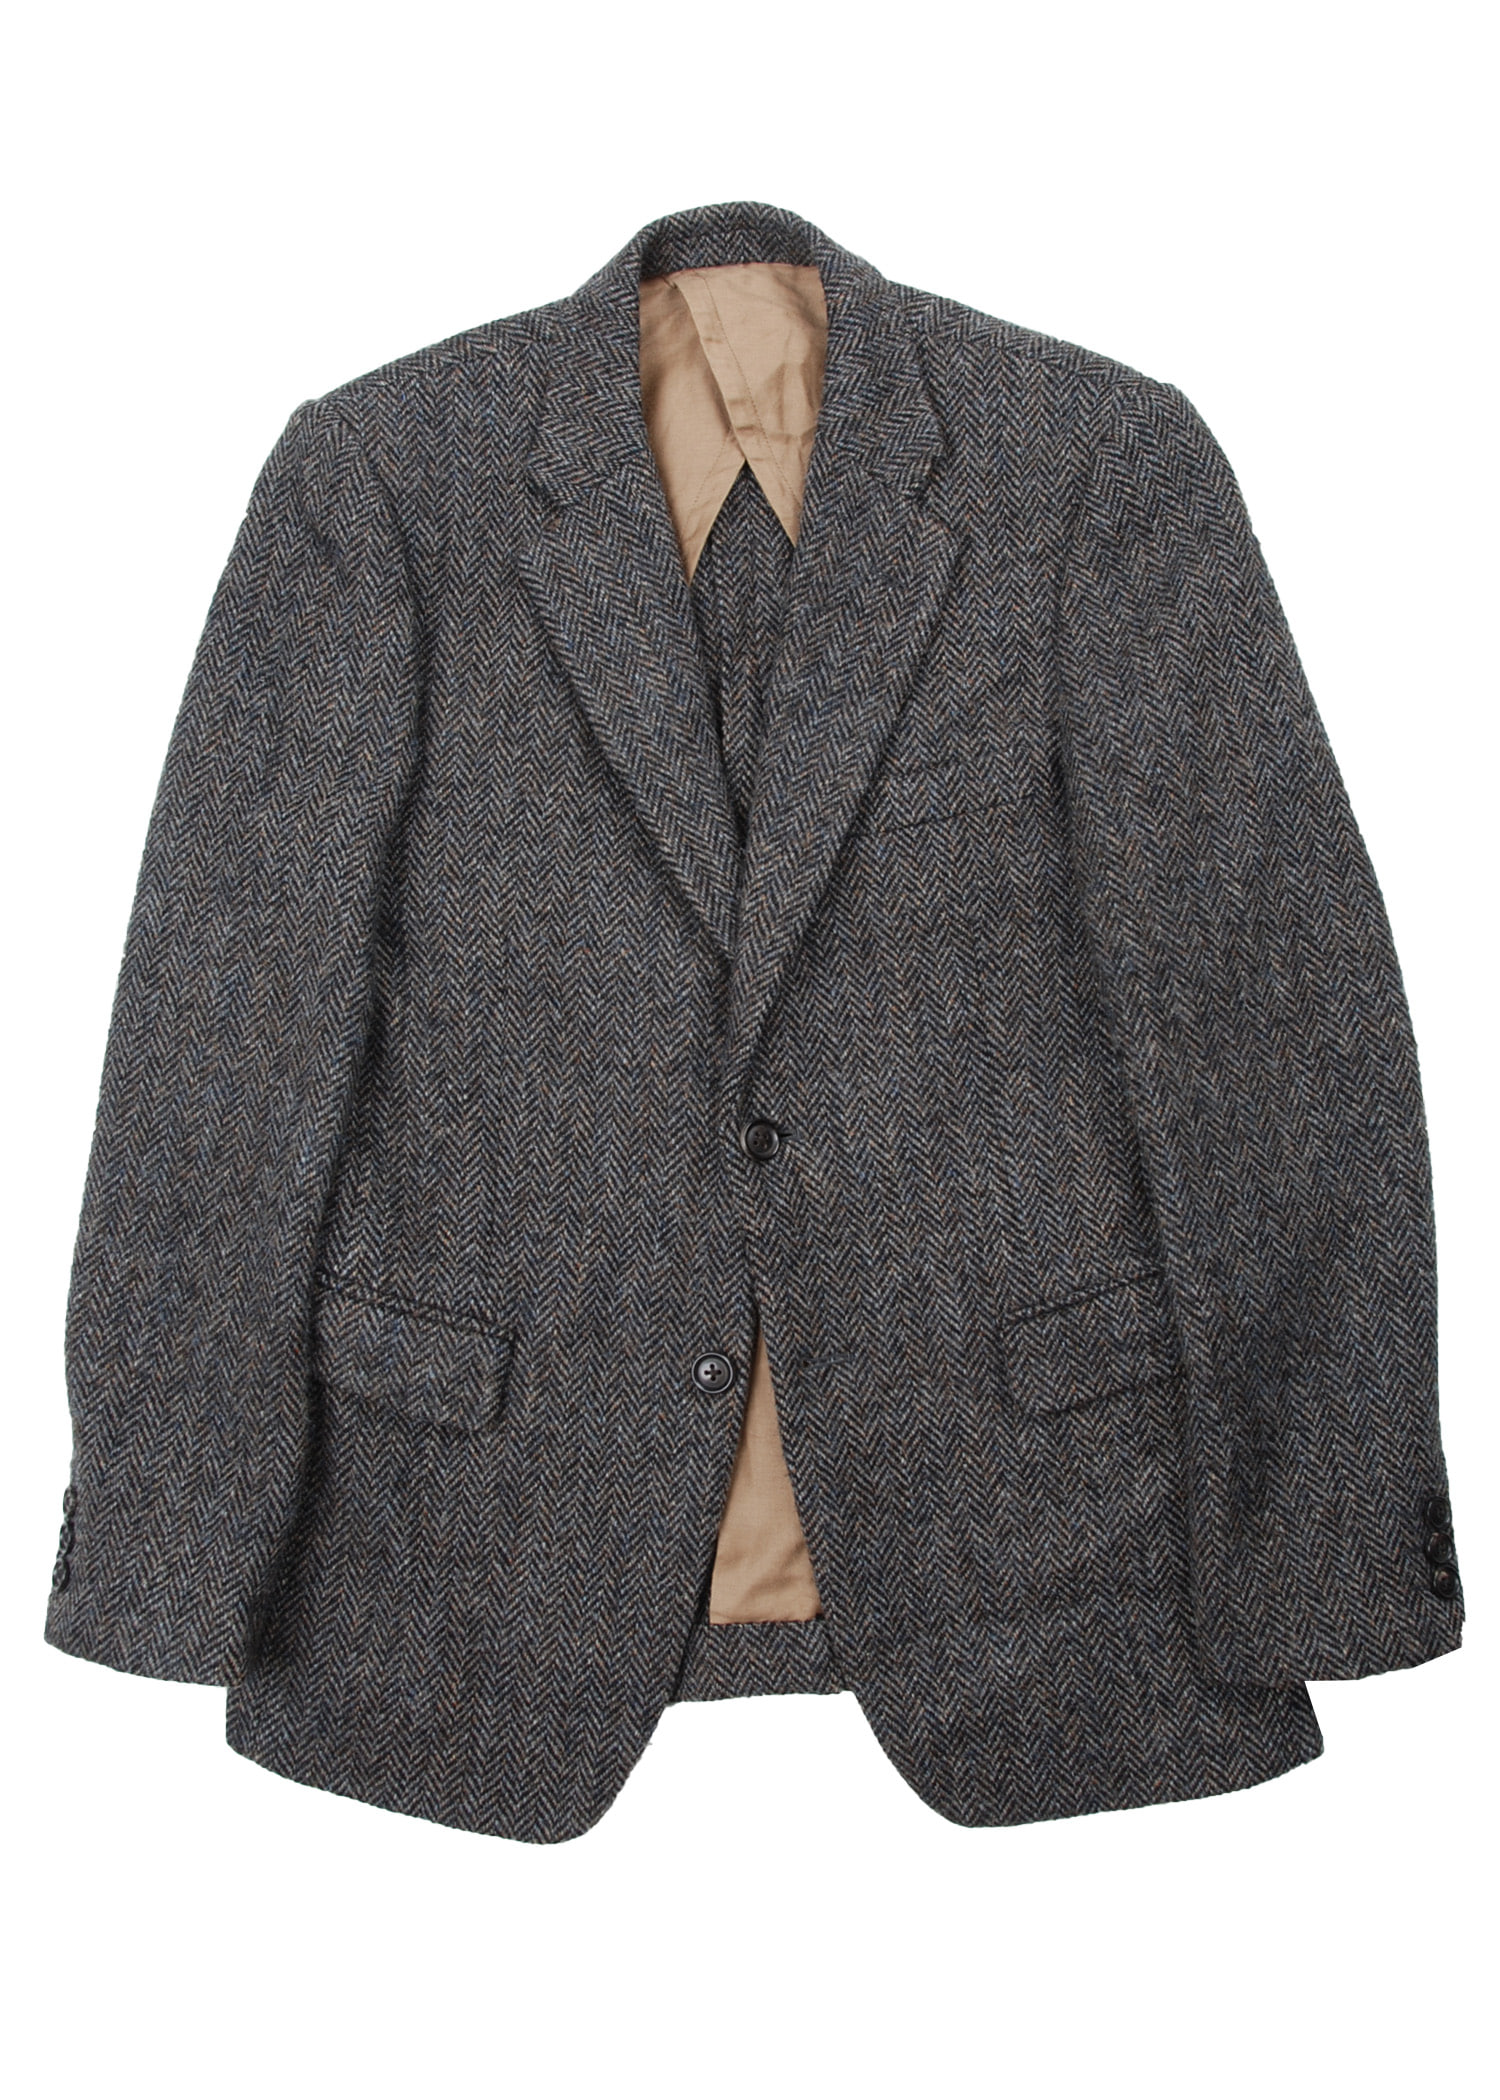 Journal standard tweed jacket ( fabric by Harris Tweed)